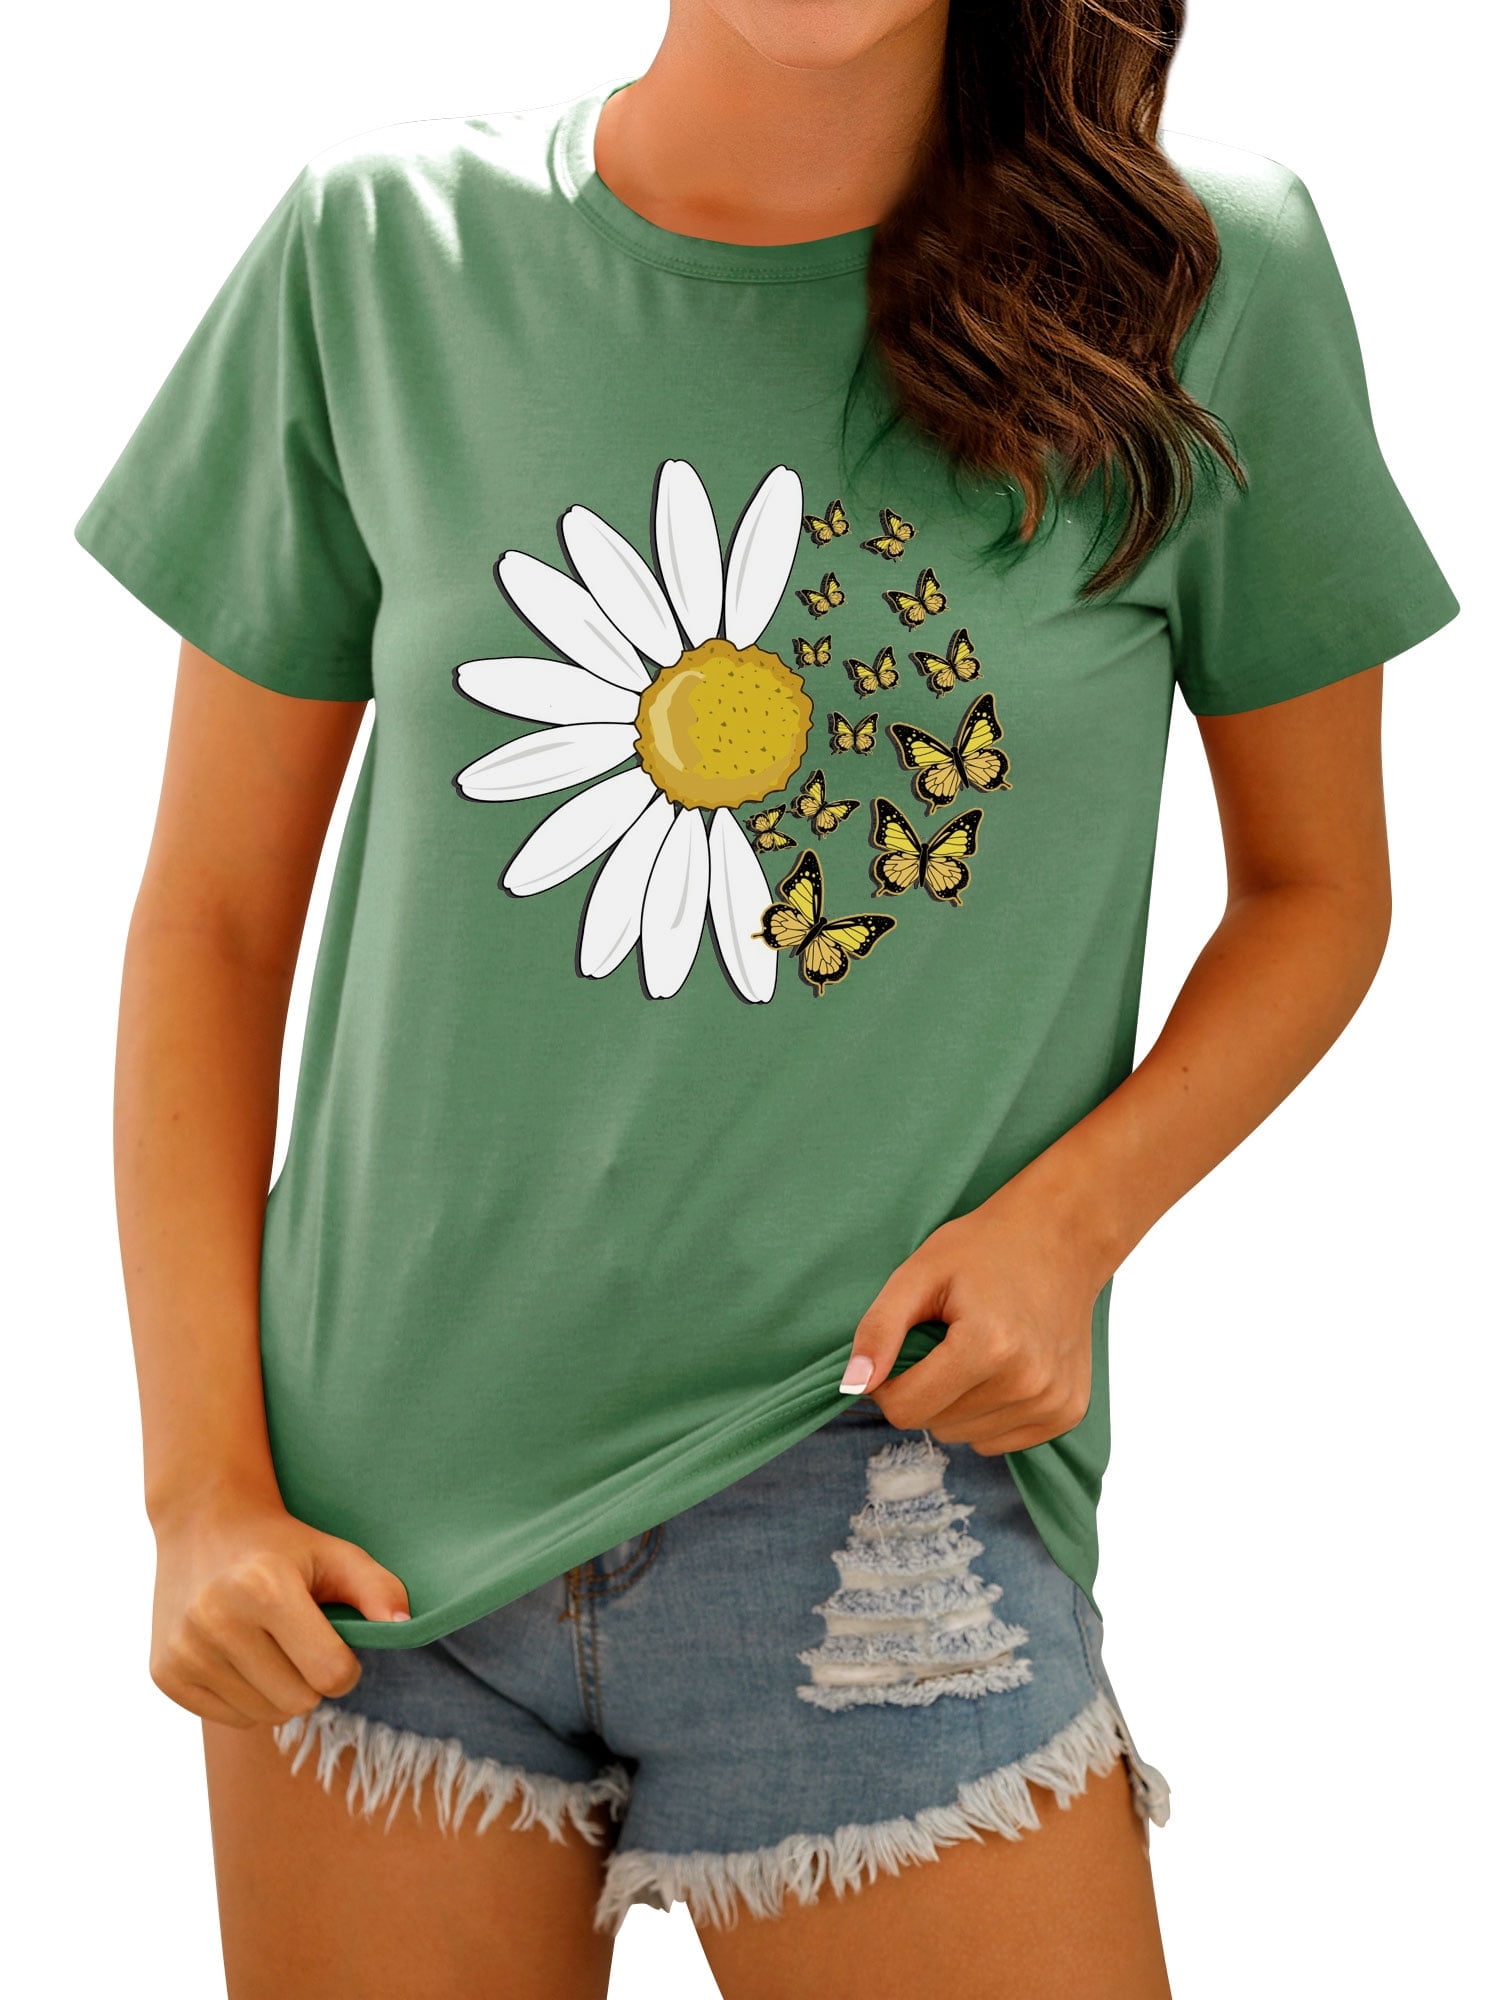 TWZH Women Butterflies Daisy Graphic Print Short Sleeve T-Shirt ...